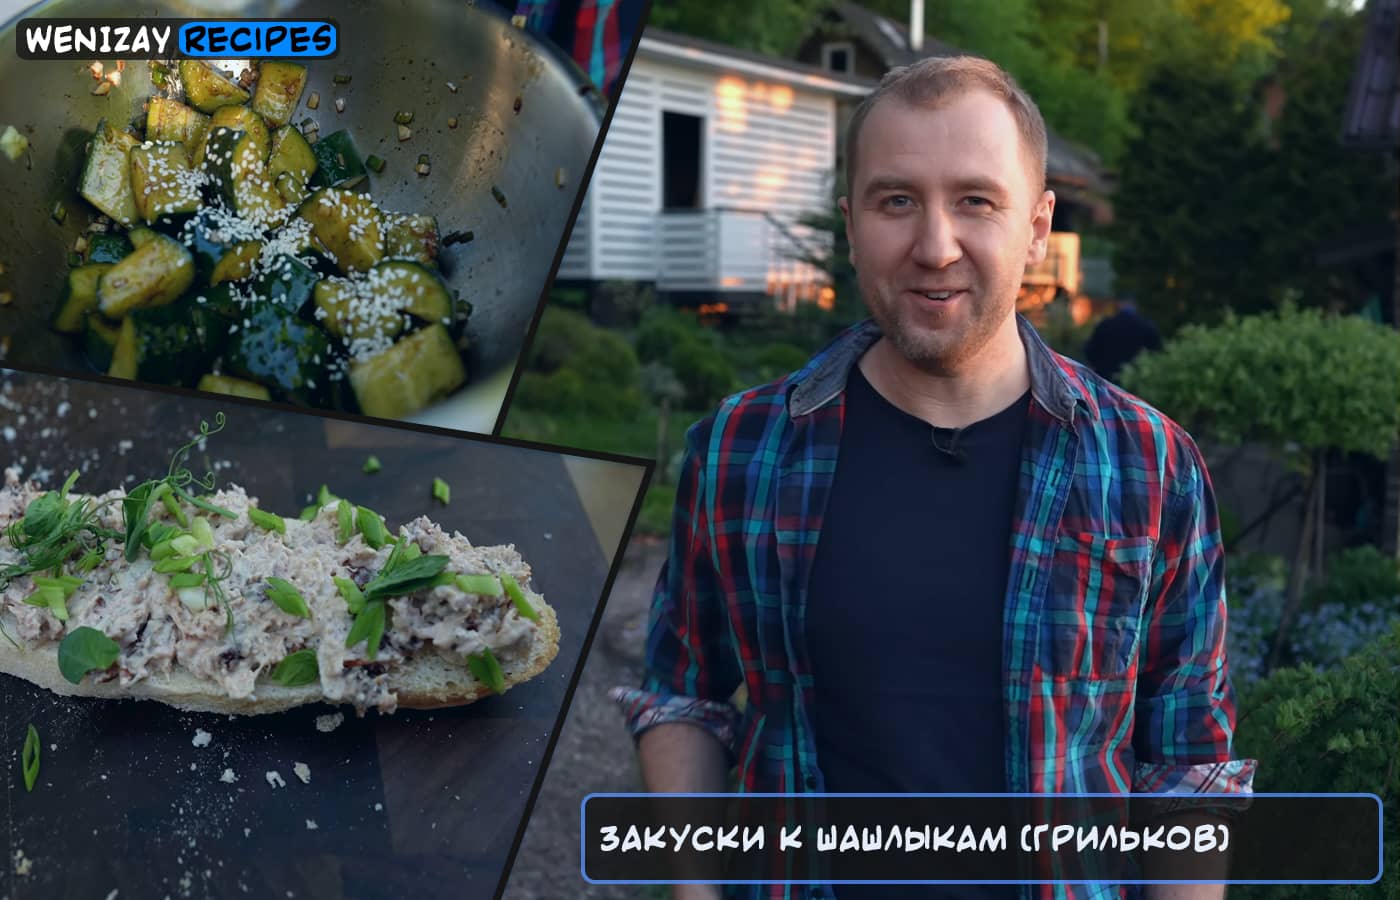 Закуски к шашлыкам (видео) - Грильков, WeniZAYRecipes (видео рецепты)